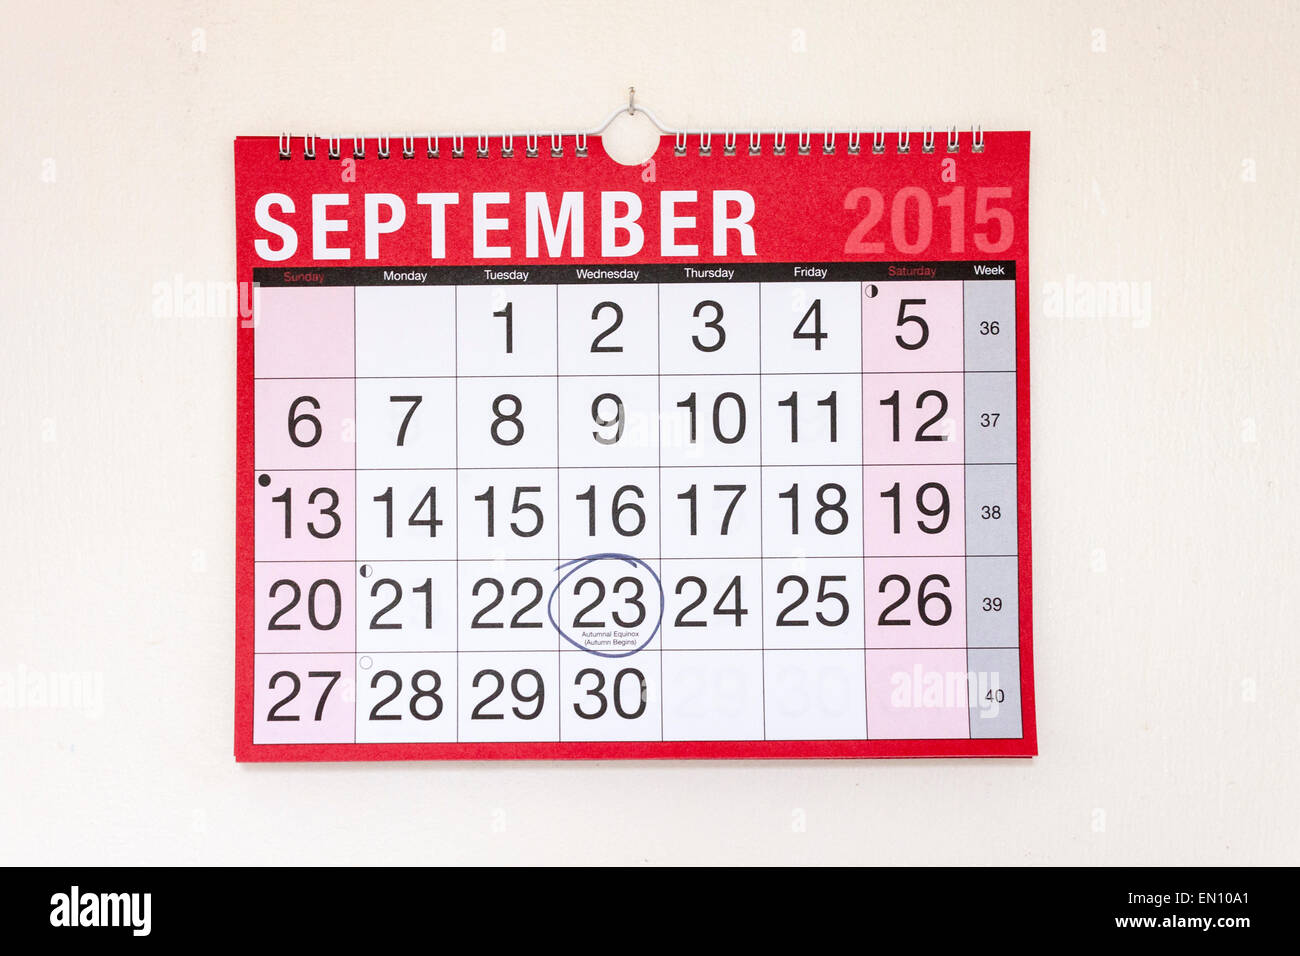 Calendrier mural mensuel de septembre 2015, l'Équinoxe d'automne encerclé Banque D'Images